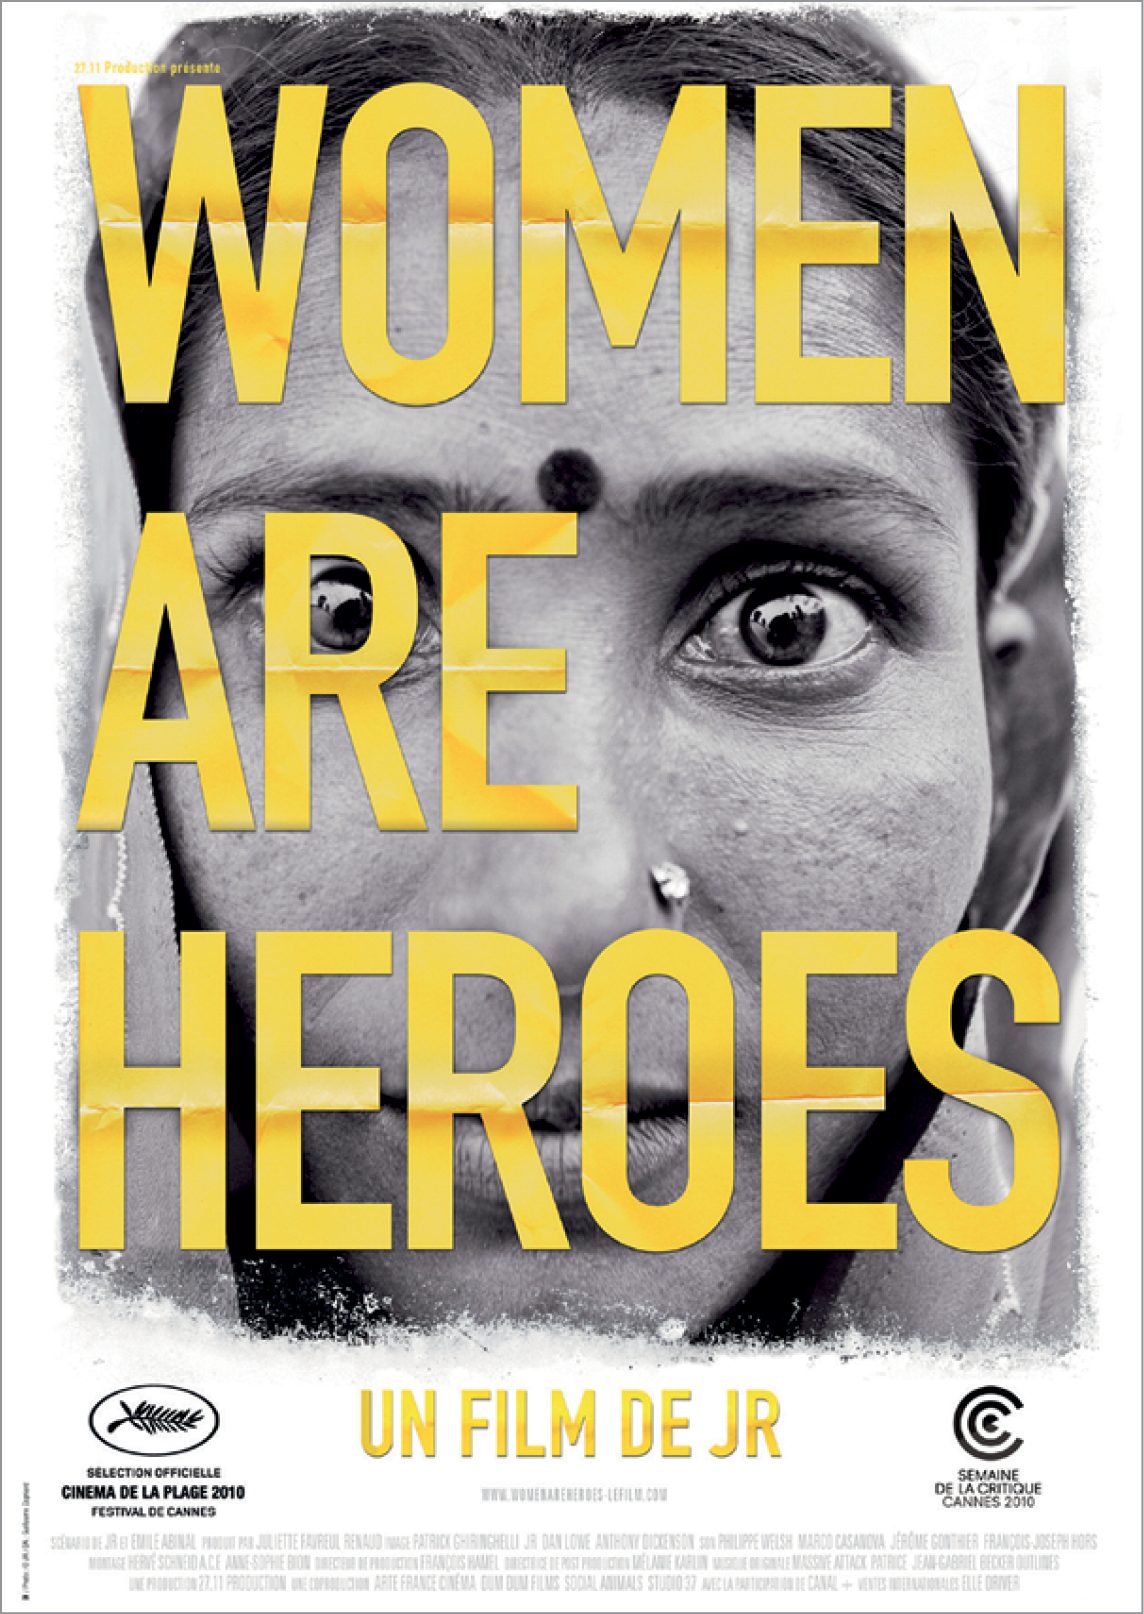 Fotografia. Capa de documentário. Fotografia em preto e branco de uma mulher com piercing no nariz e um ponto no centro da testa, usando lenço na cabeça. Sobre a imagem, há a frase Women are heroes.